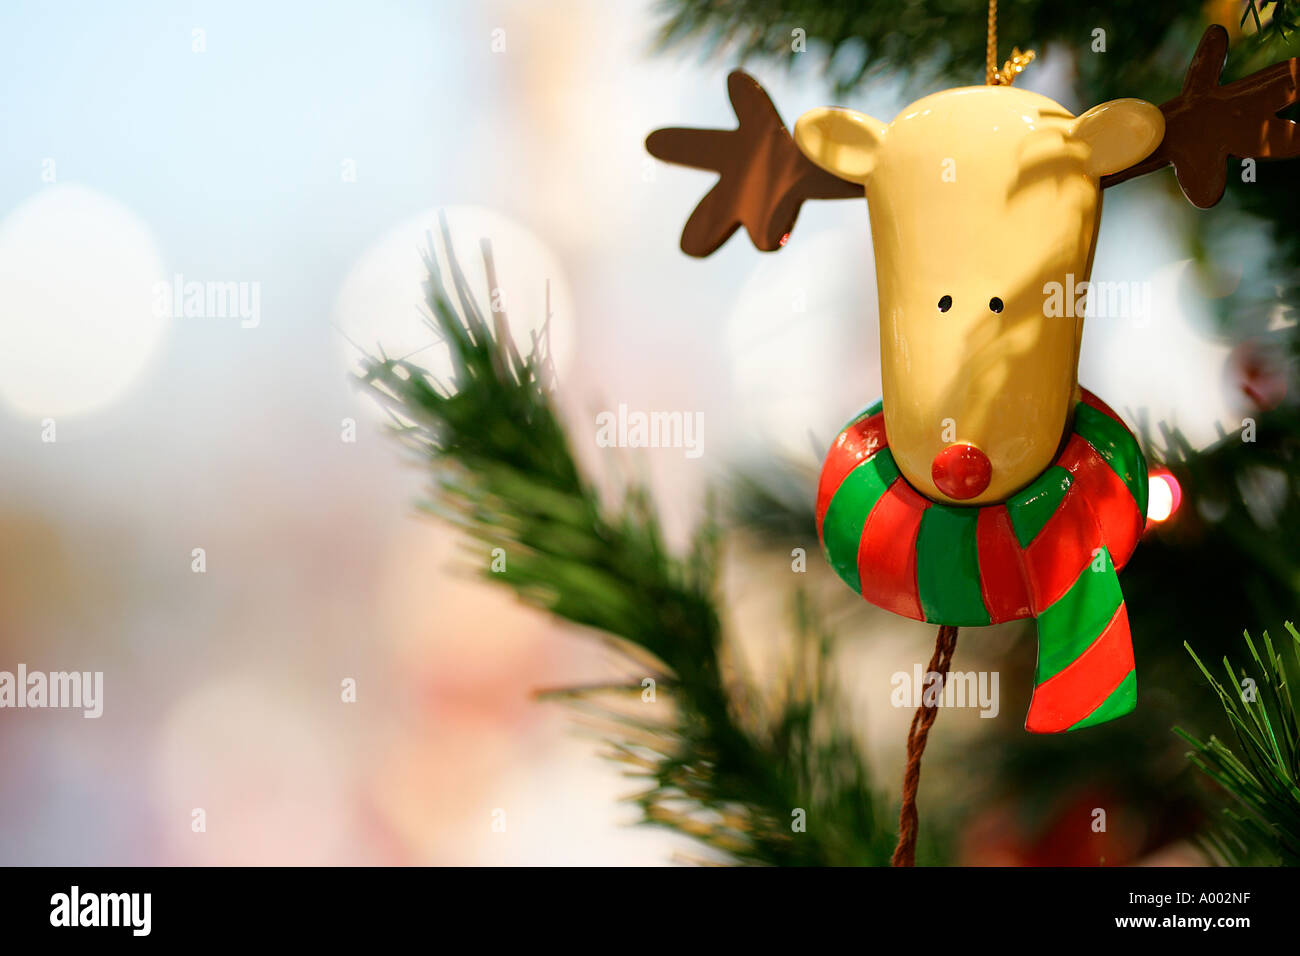 Rudolph das rote Nase Rentier Weihnachten X-Mas Dekoration Spielzeug dekorieren Party Feier weichen Geschenke Weihnachtsbeleuchtung Neujahr Stockfoto